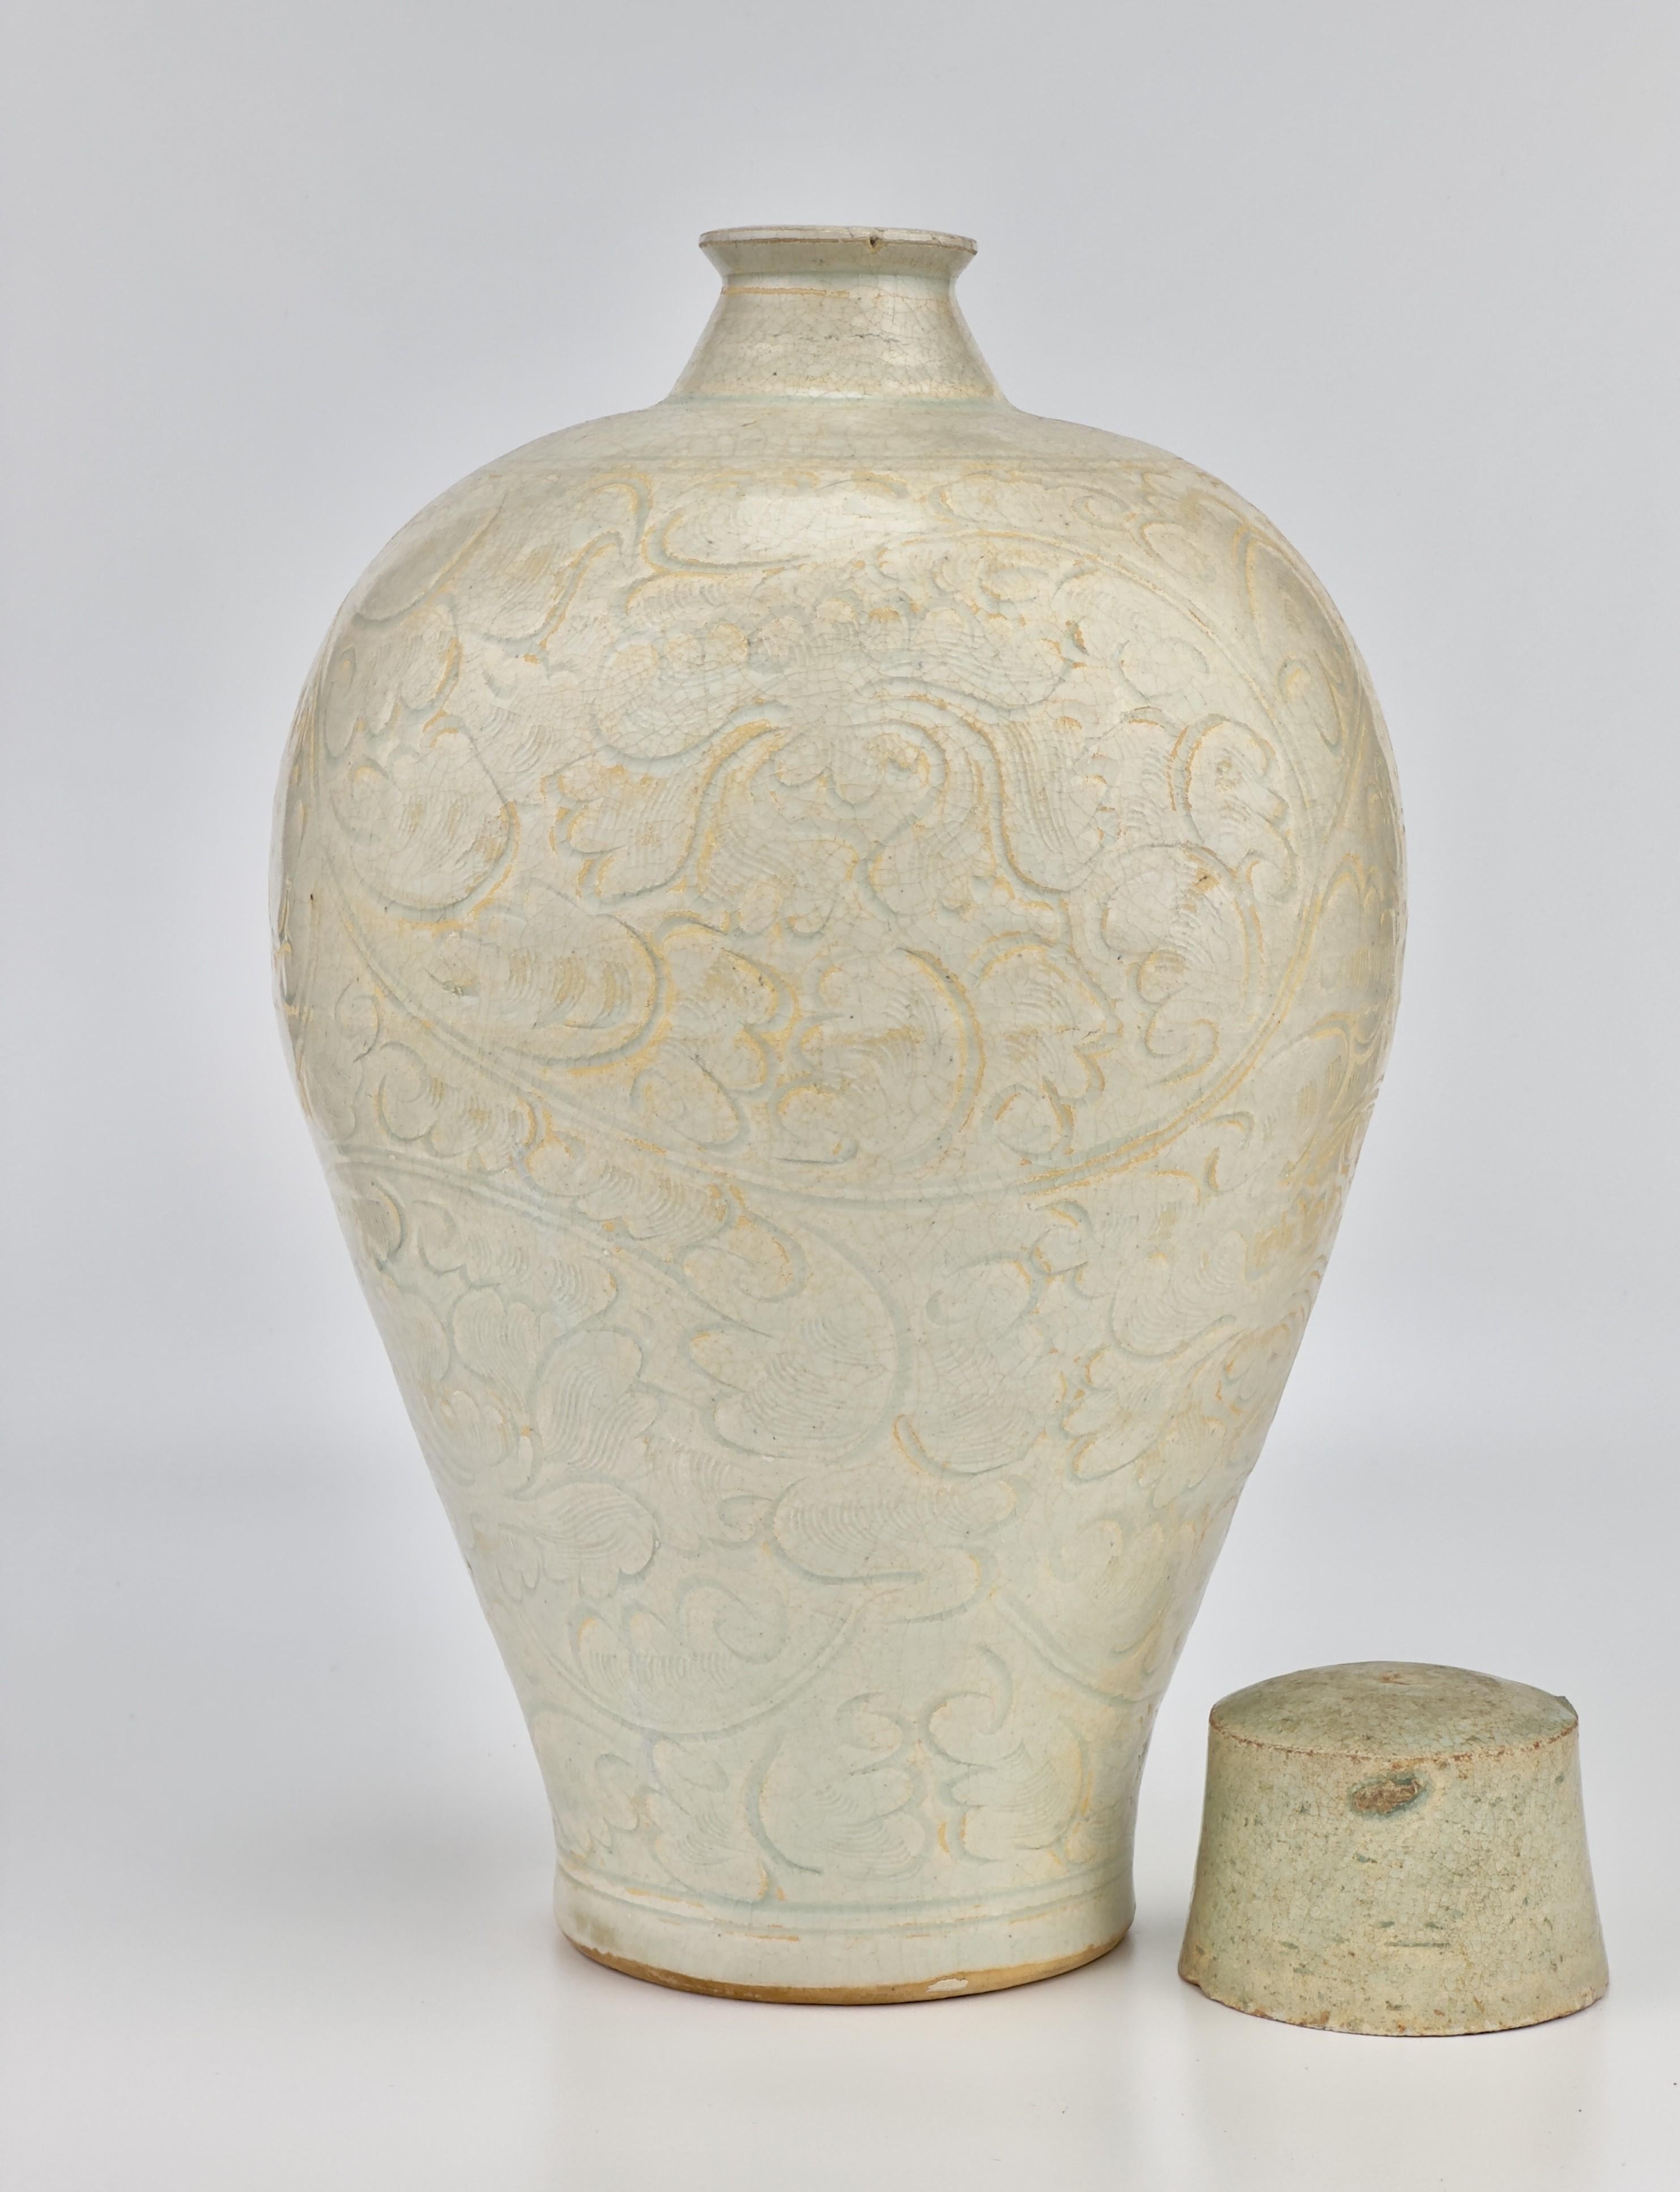 Die Vase weist eine fein gearbeitete Struktur auf, die sich durch breite Schultern und längliche, sich verjüngende Seiten auszeichnet und von einem kompakten, gerippten zylindrischen Hals gekrönt wird. Sein Äußeres ist mit kunstvoll geschnitzten